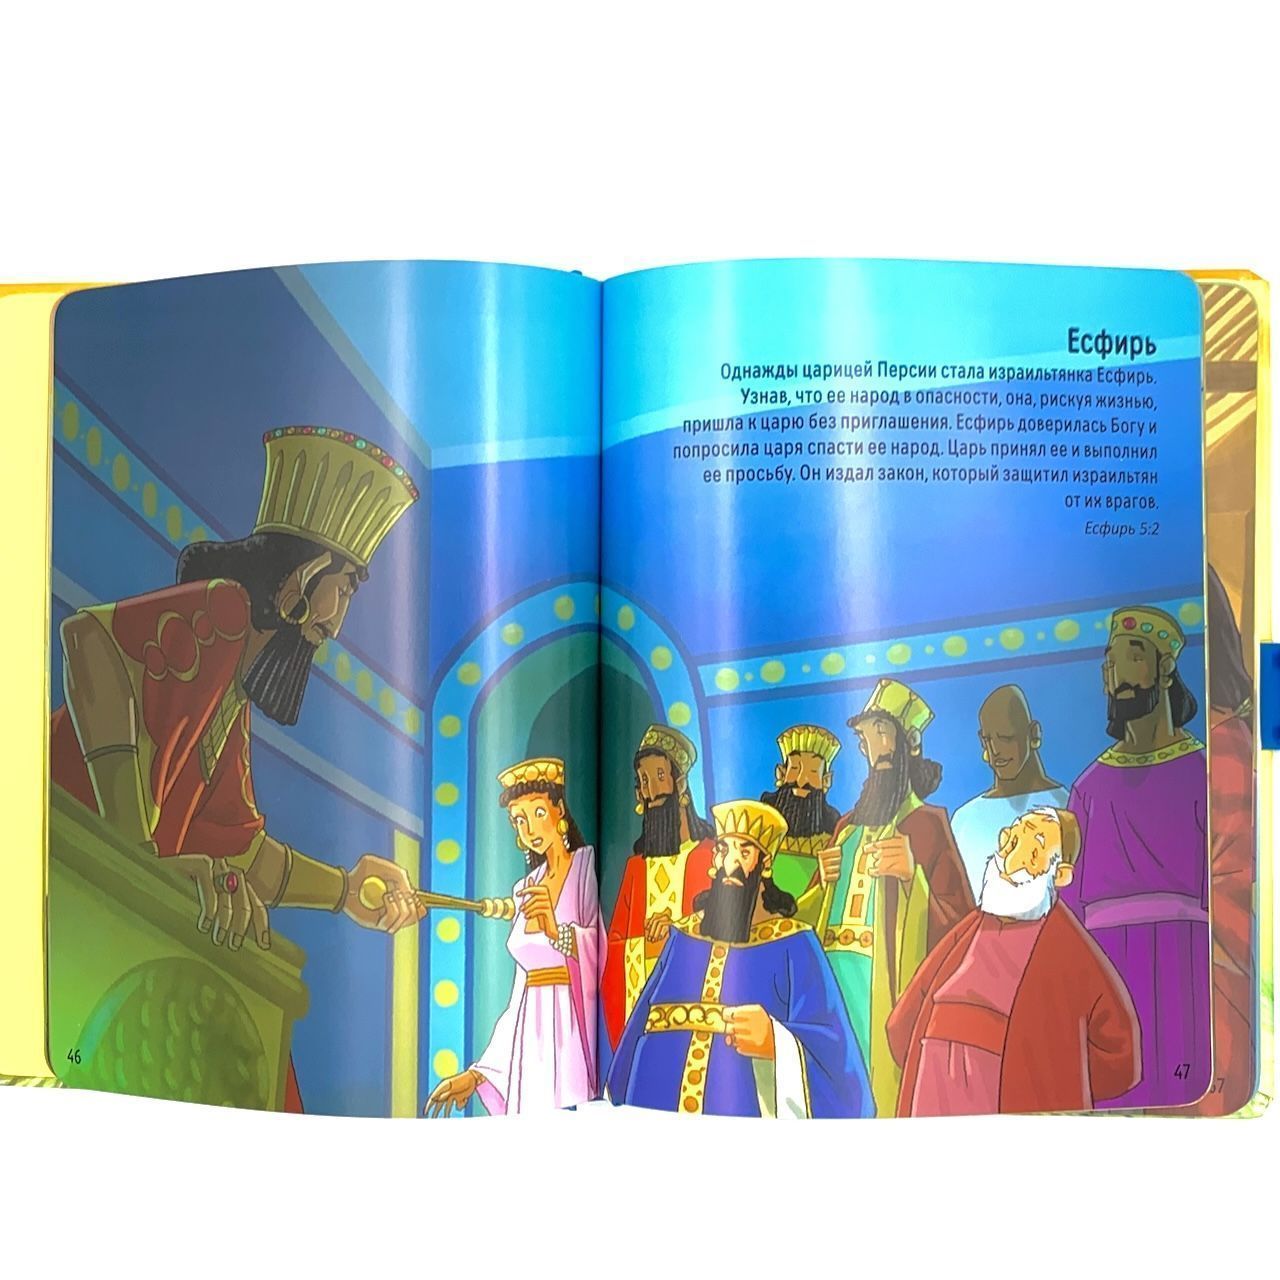 Моя большая удобная Библия. Чемоданчик. Библейские истории для детей.